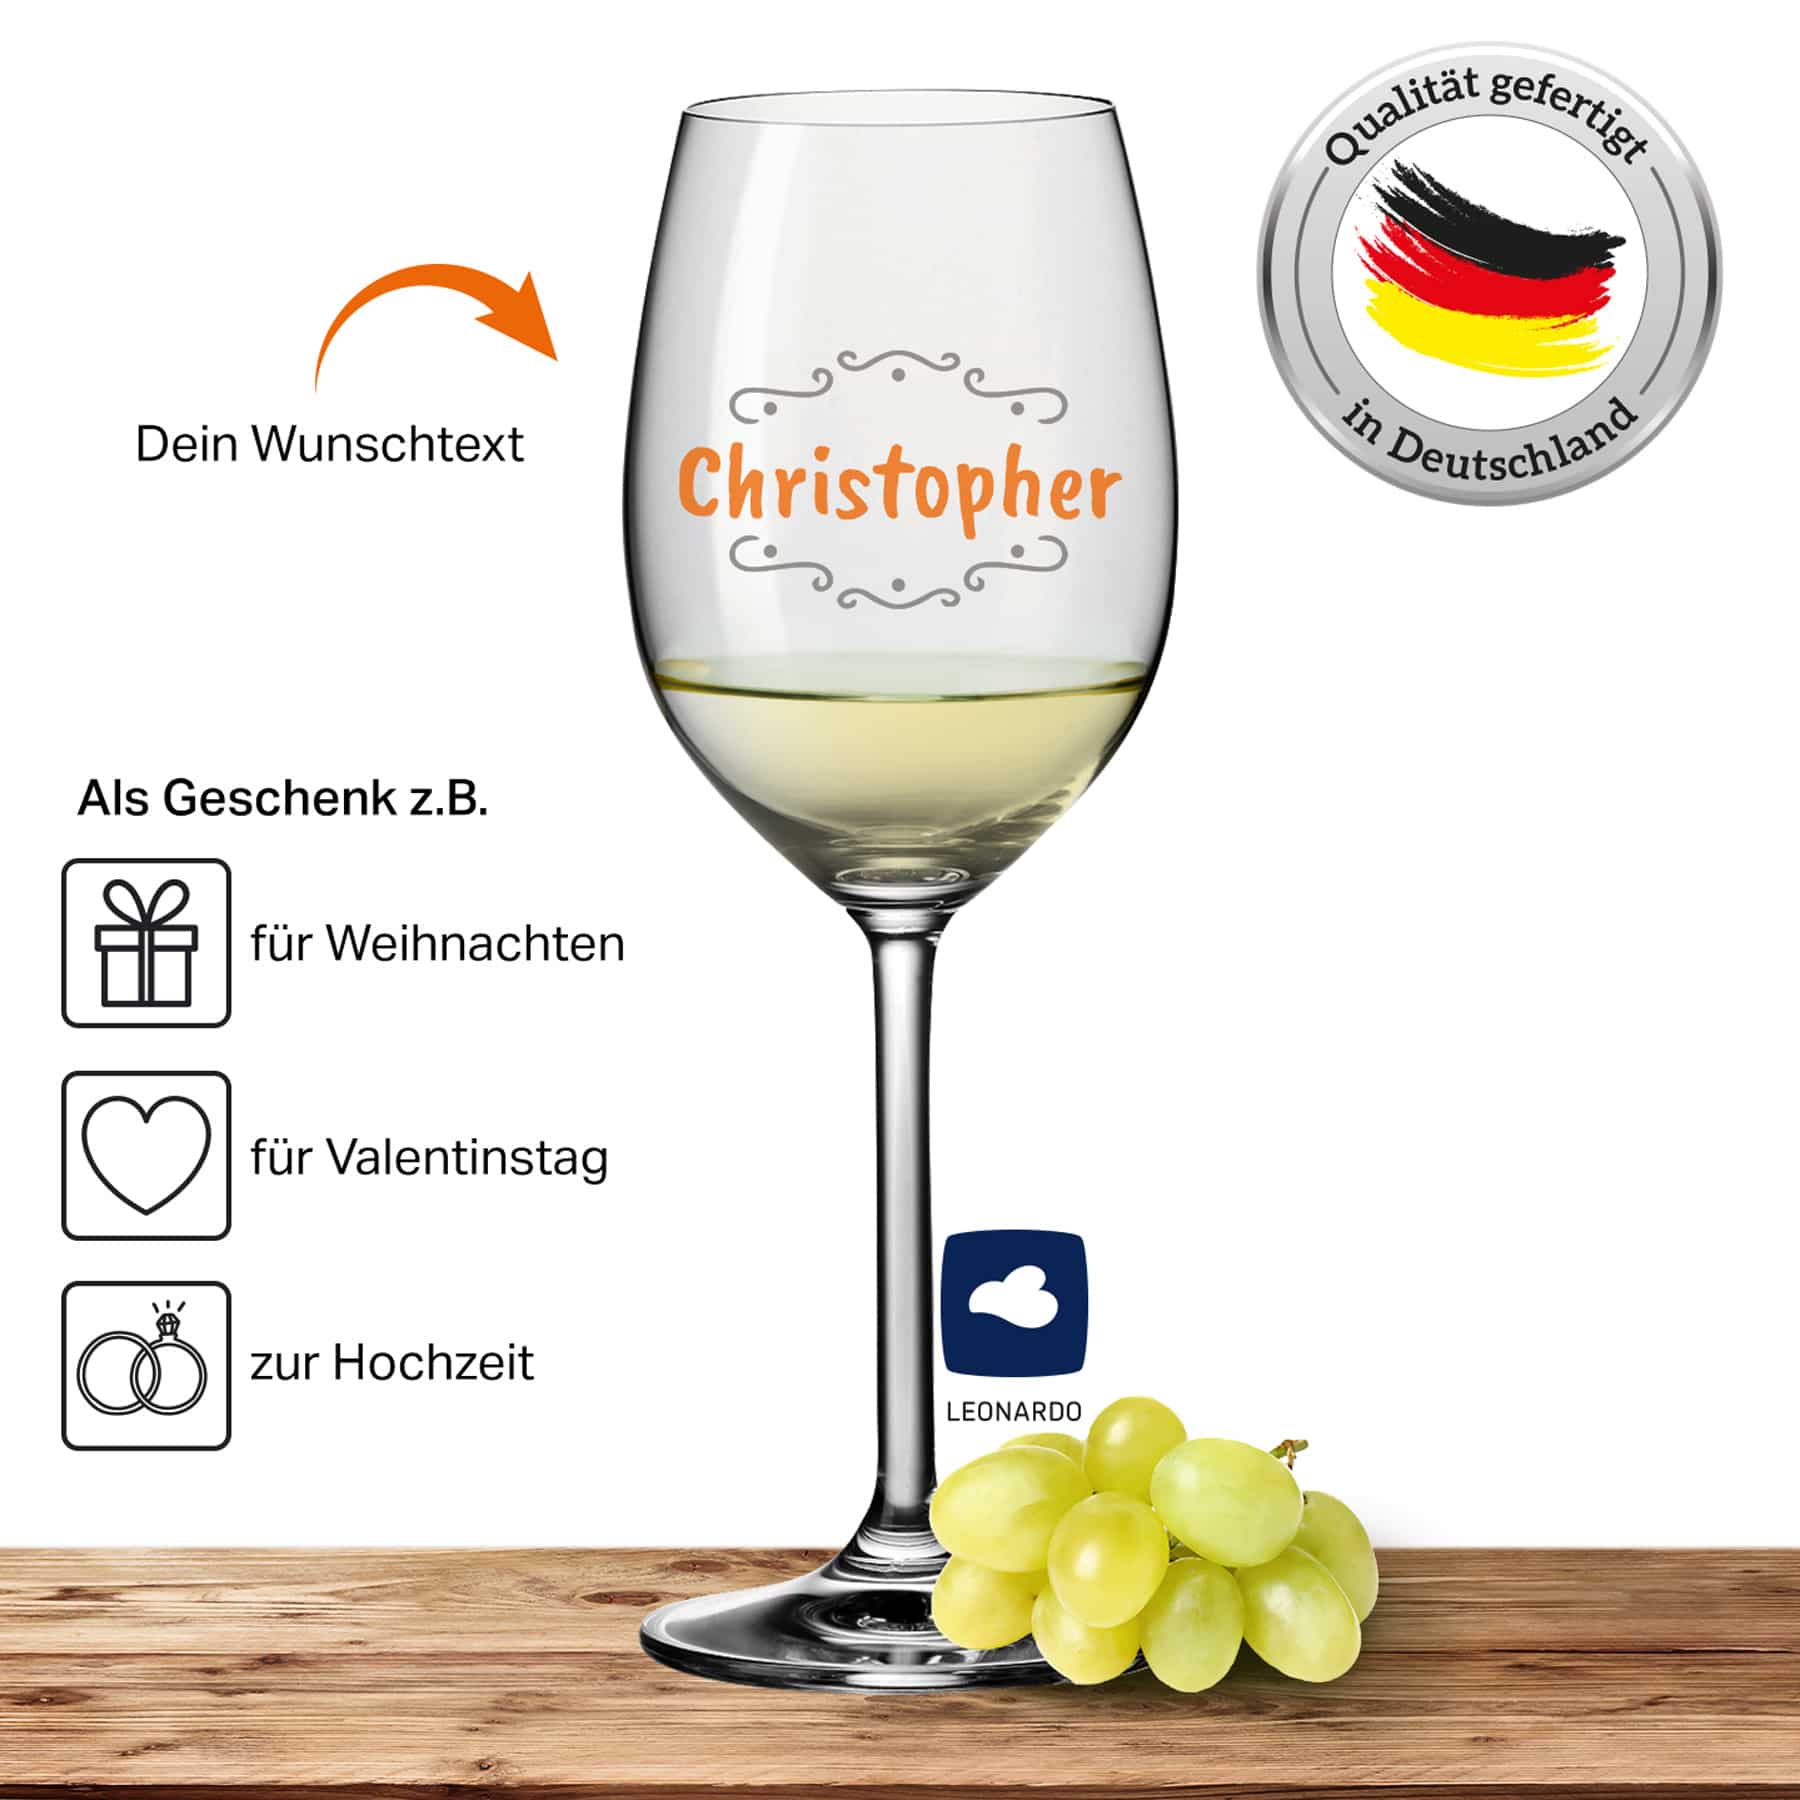 2x Leonardo Weißweinglas mit Namen oder Wunschtext graviert, 370ml, DAILY, personalisiertes Premium Weißweinglas in Gastroqualität (Verzierung 02)